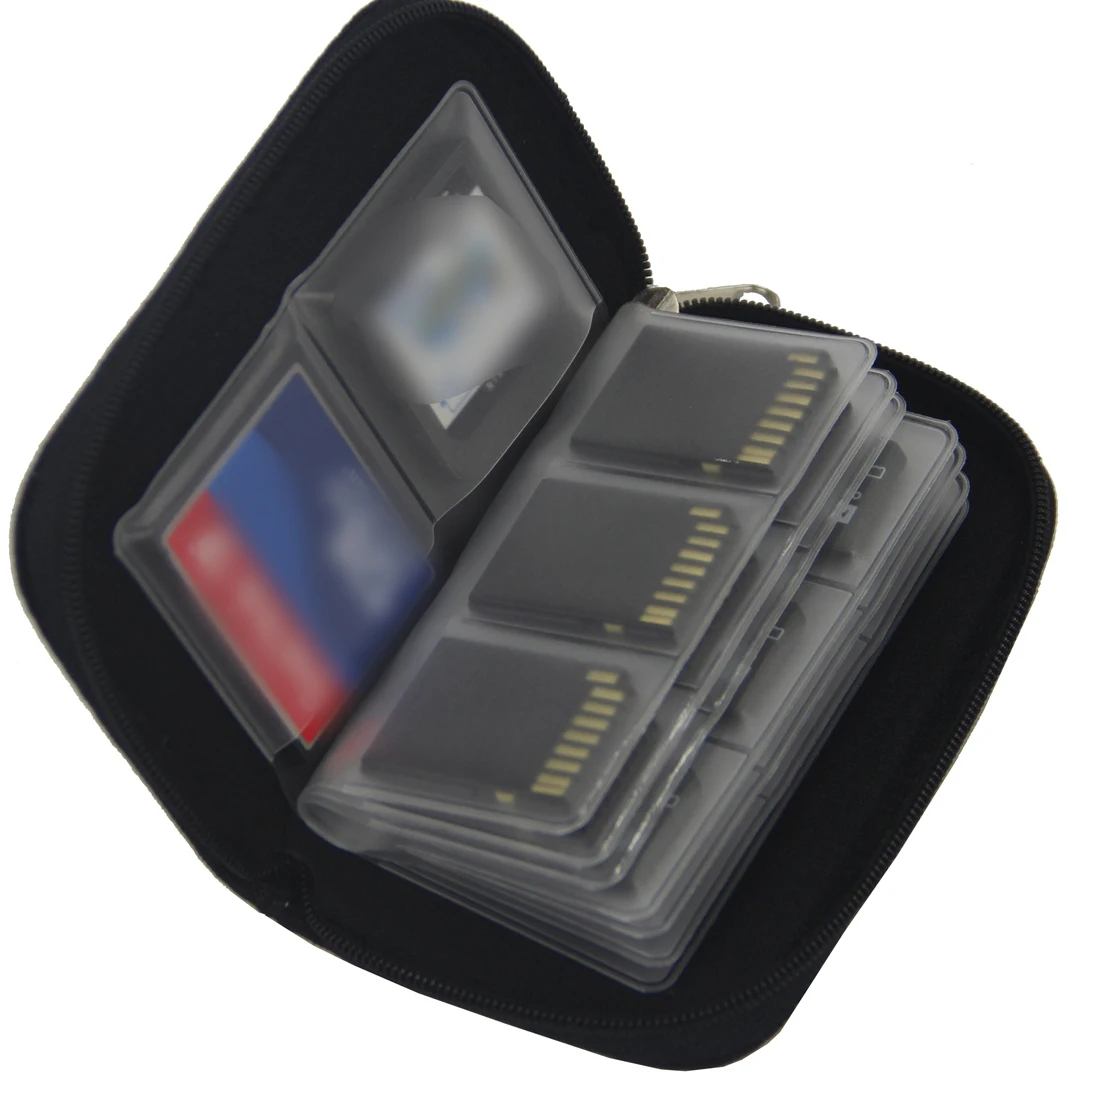 Питьевой 22 с карманом для карт SD SDHC MMC CF устройство чтения карт памяти Micro SD слот для карт памяти для хранения футляр для переноски Чехол Держатель Слот для карт памяти сумка черного цвета